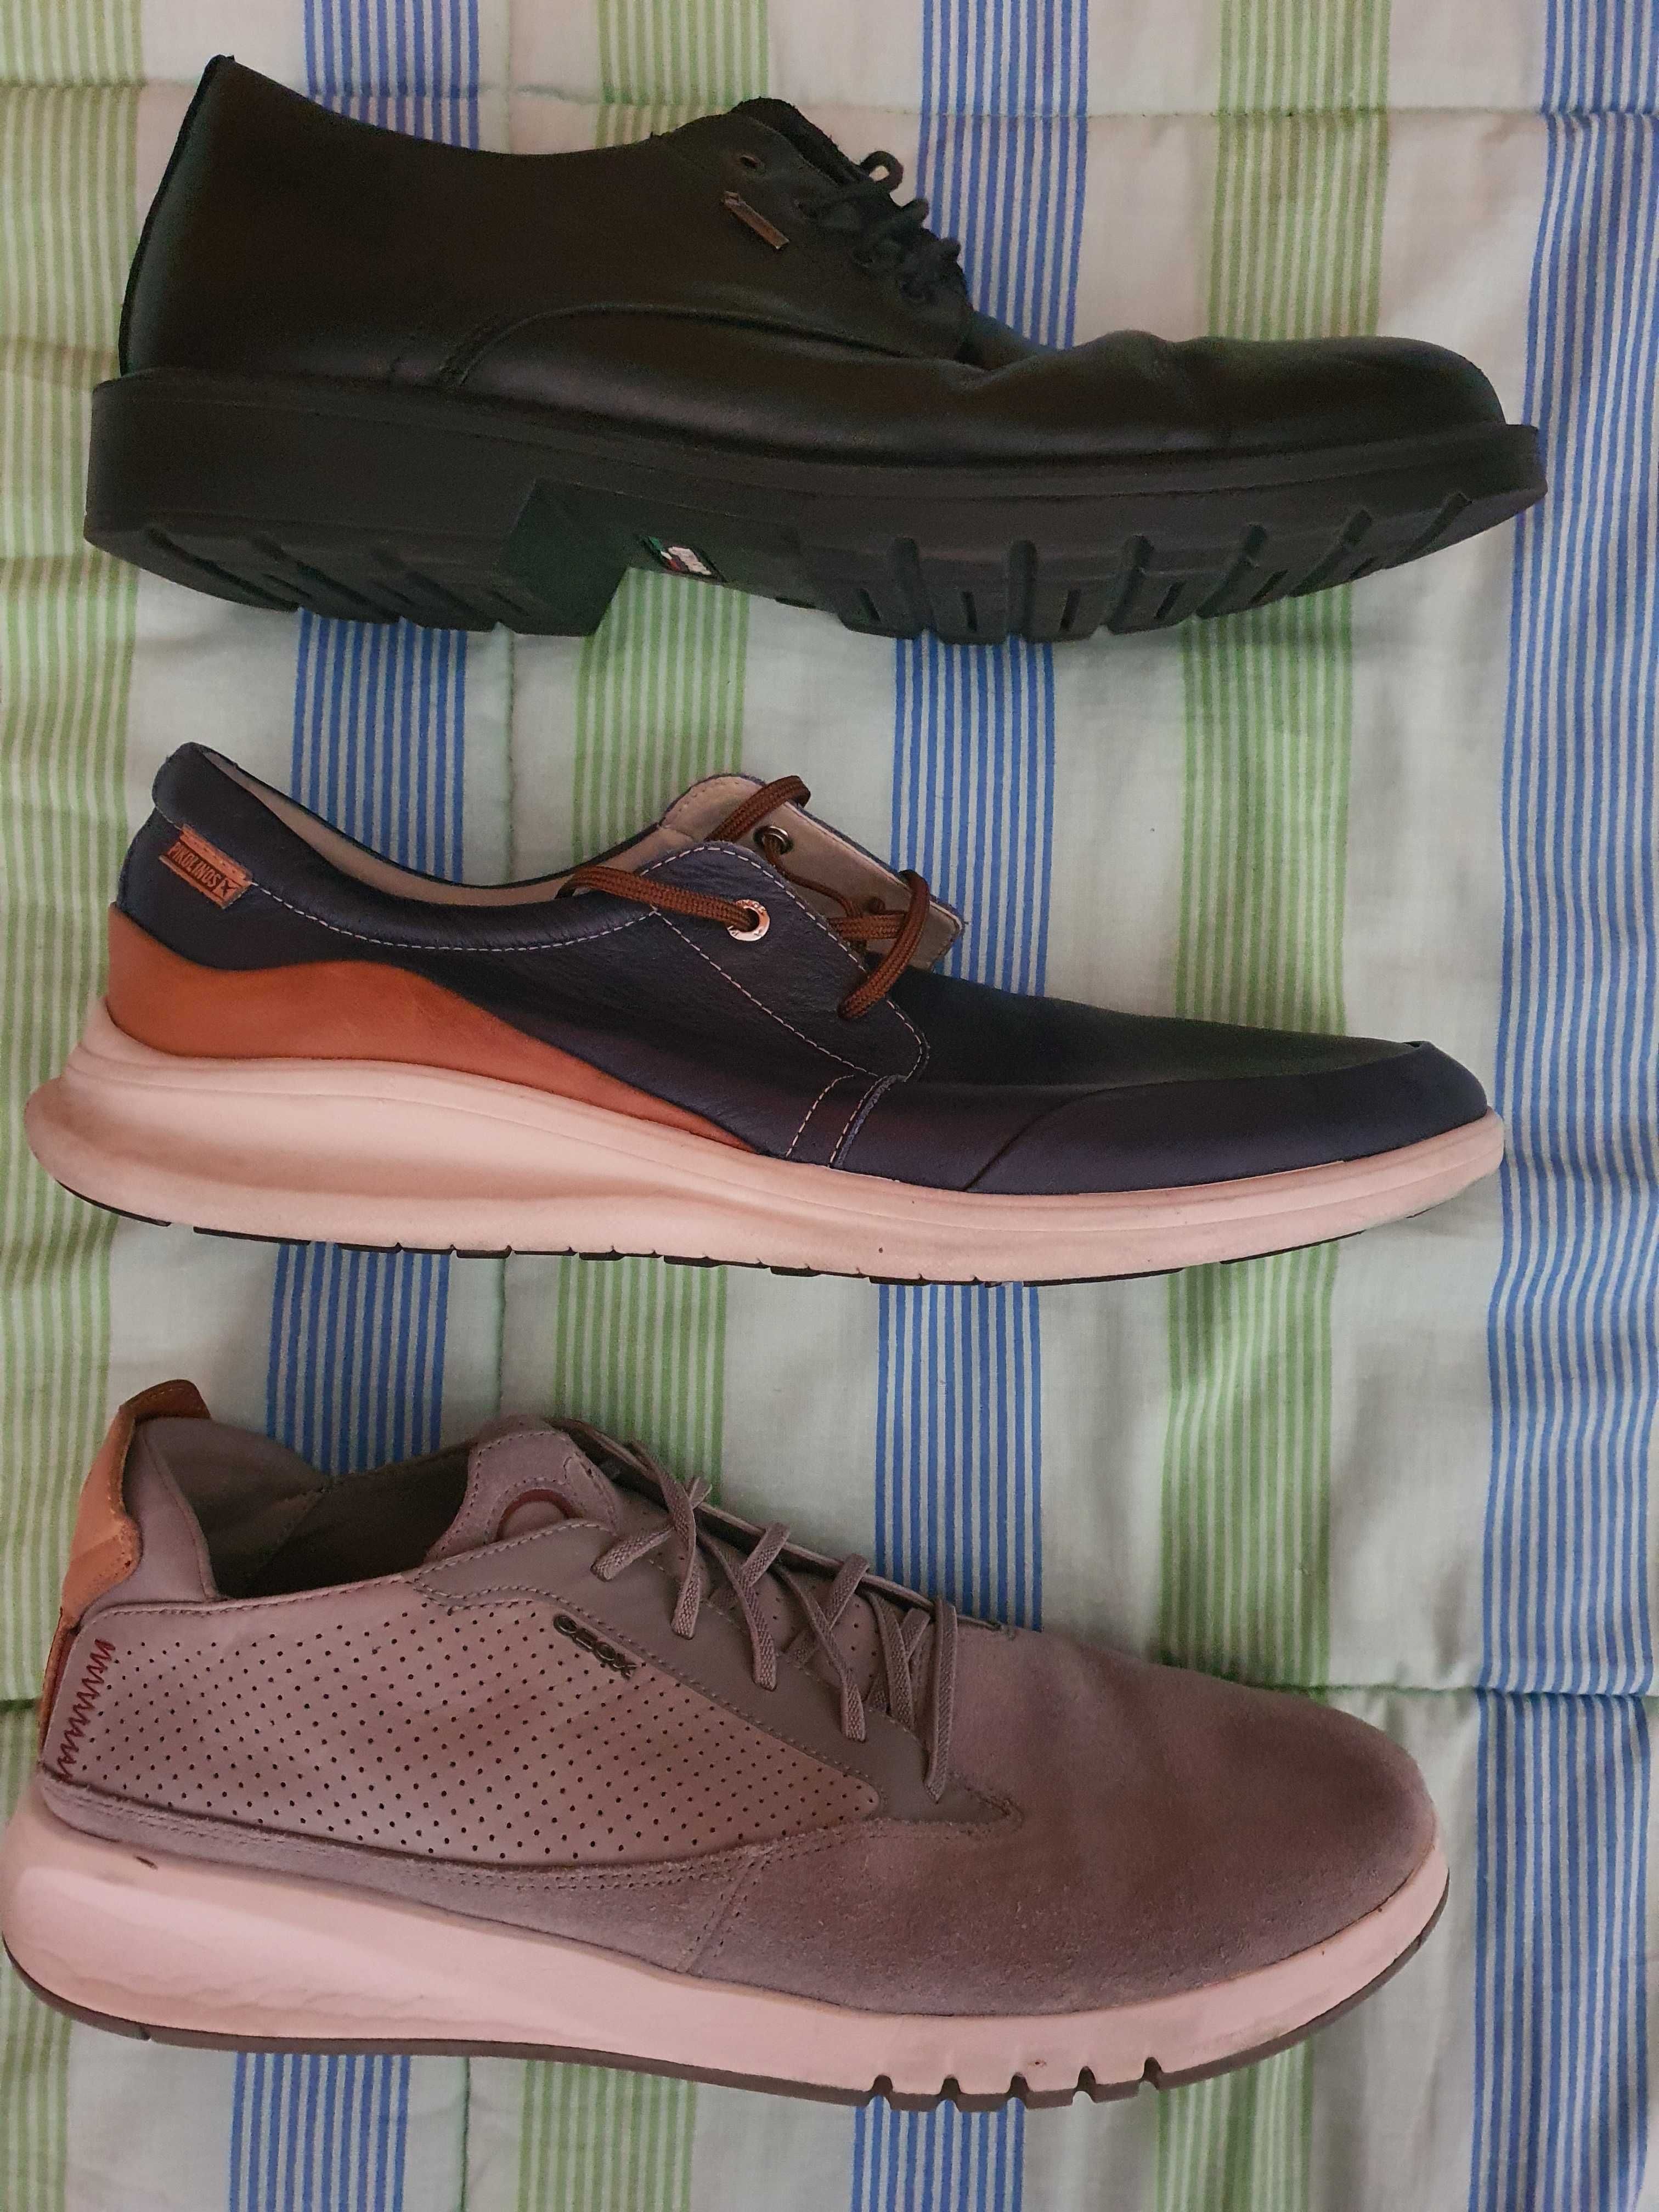 Sapatos Geox, Pikolinos e Igi & Co.